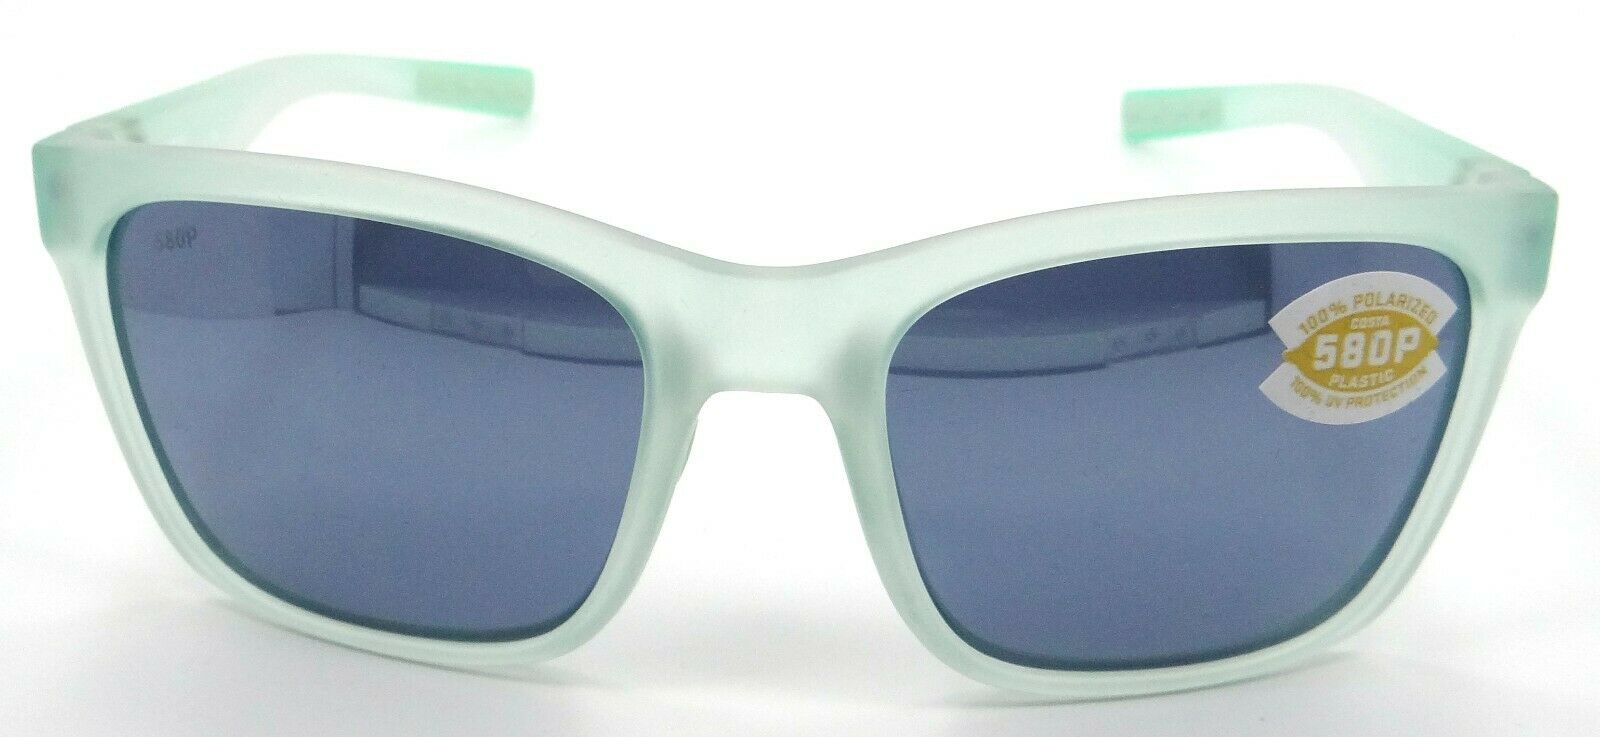 Gafas de Sol Costa Del Mar Panga Mate Seafoam Cristal / Gris Plata Espejo 580P